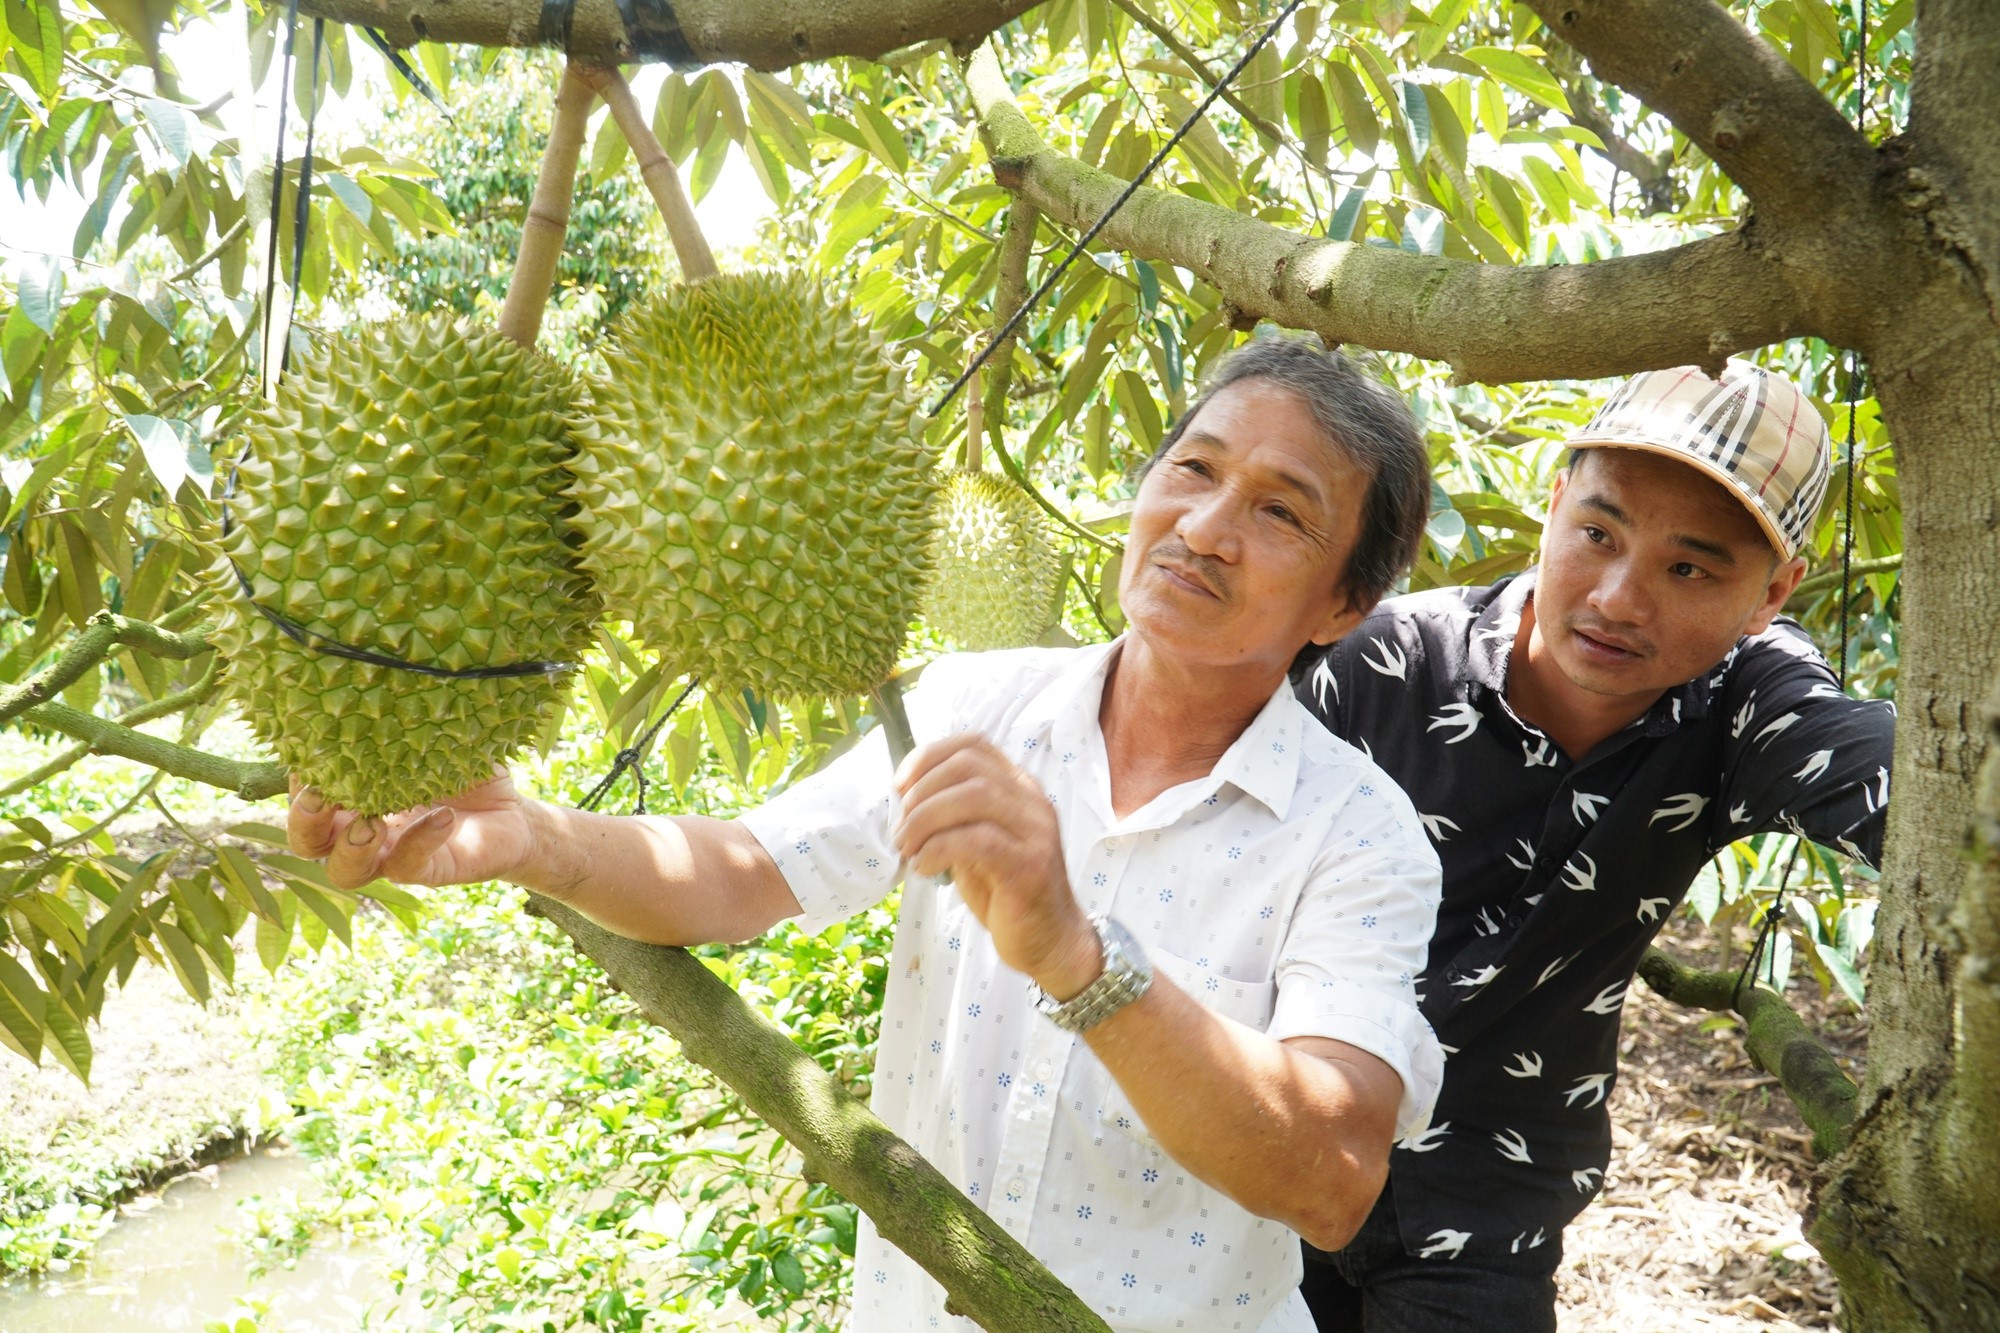 Người dân ở ĐBSCL, trong đó có nông dân tỉnh Hậu Giang đang mở rộng diện tích trồng sầu riêng. Ảnh: Huỳnh Xây